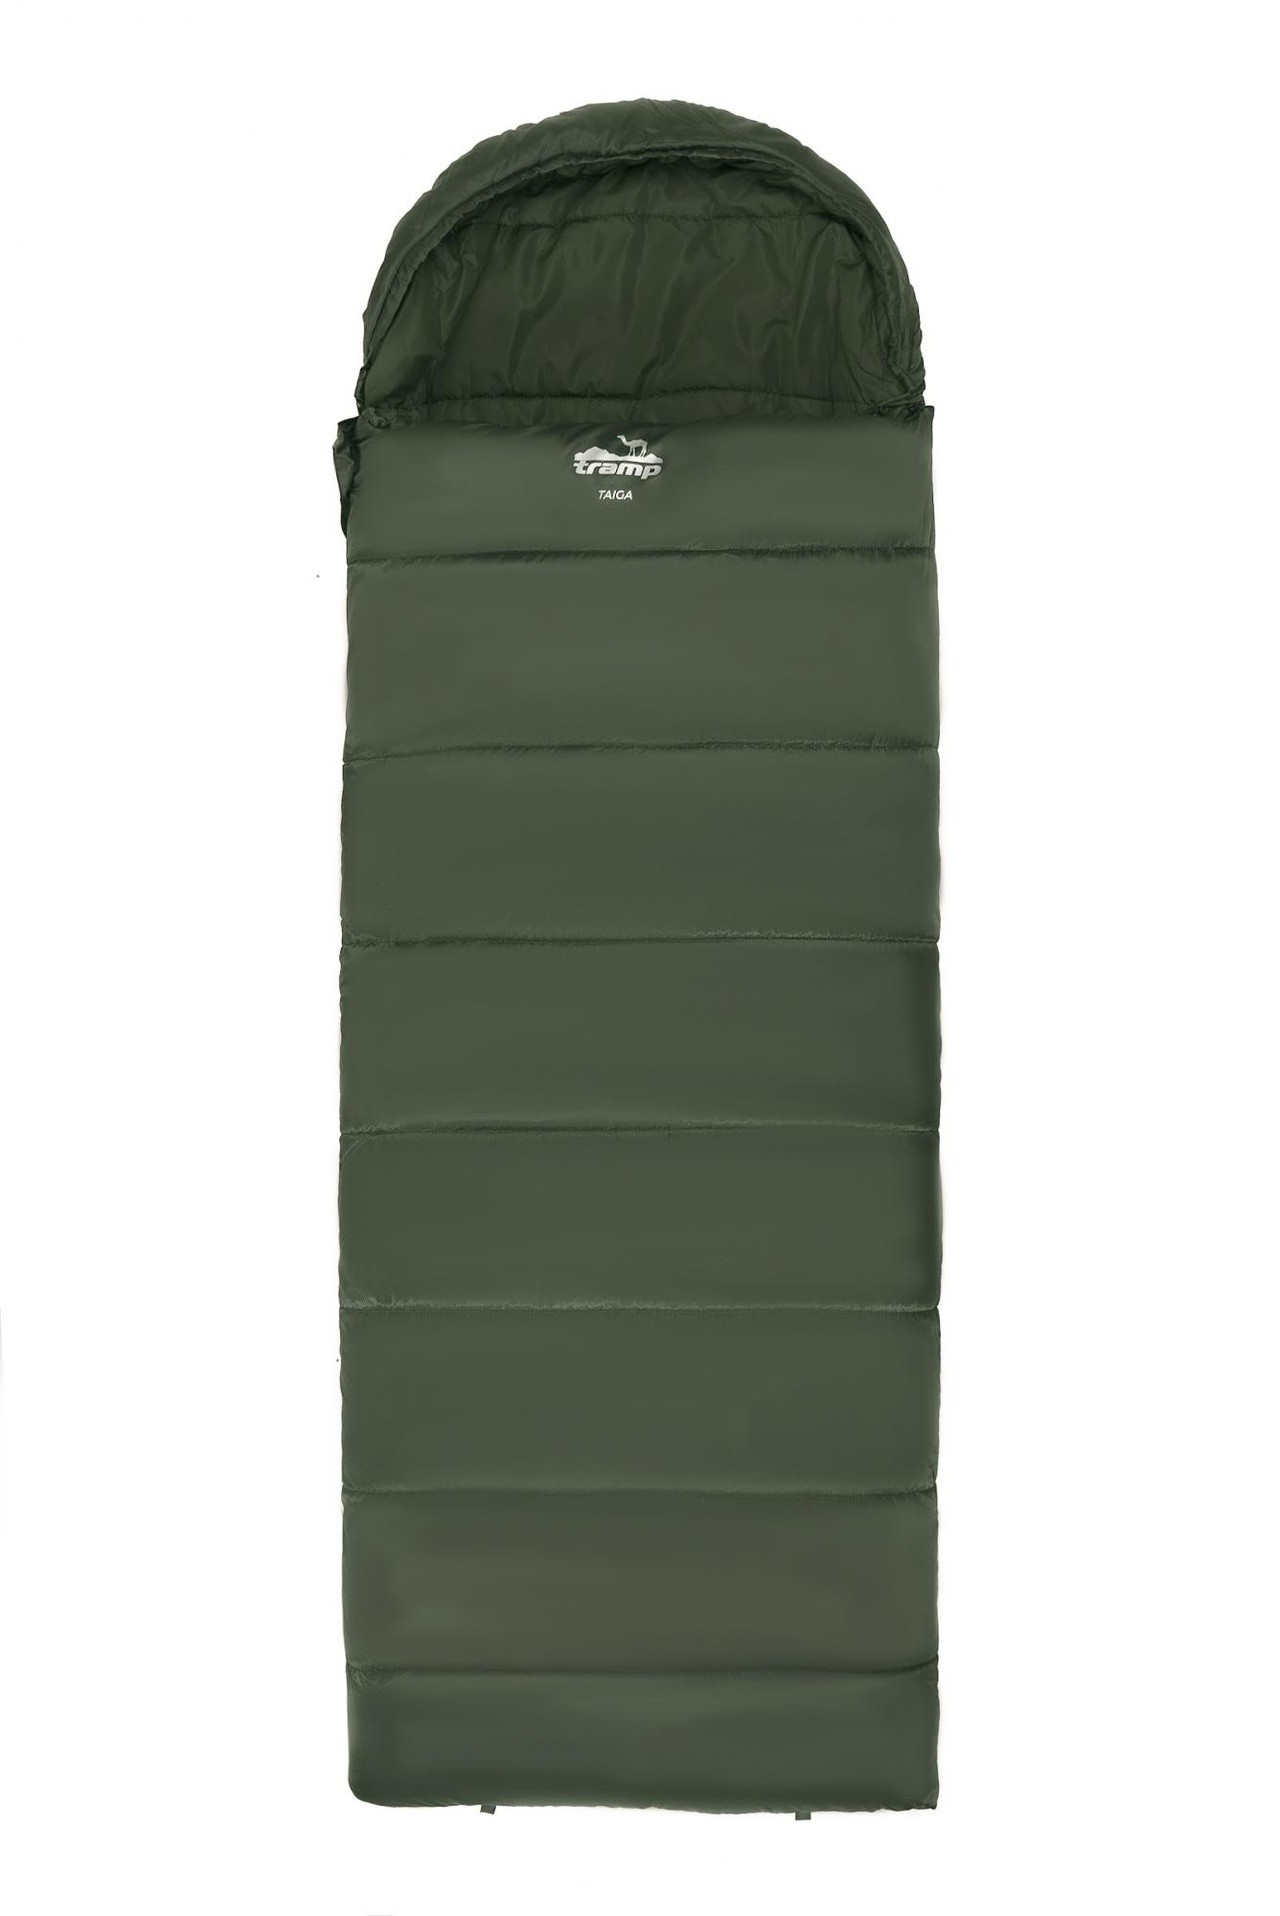 Спальный мешок одеяло Tramp Taiga 400XL 220*100 см (-10°C) - фото2